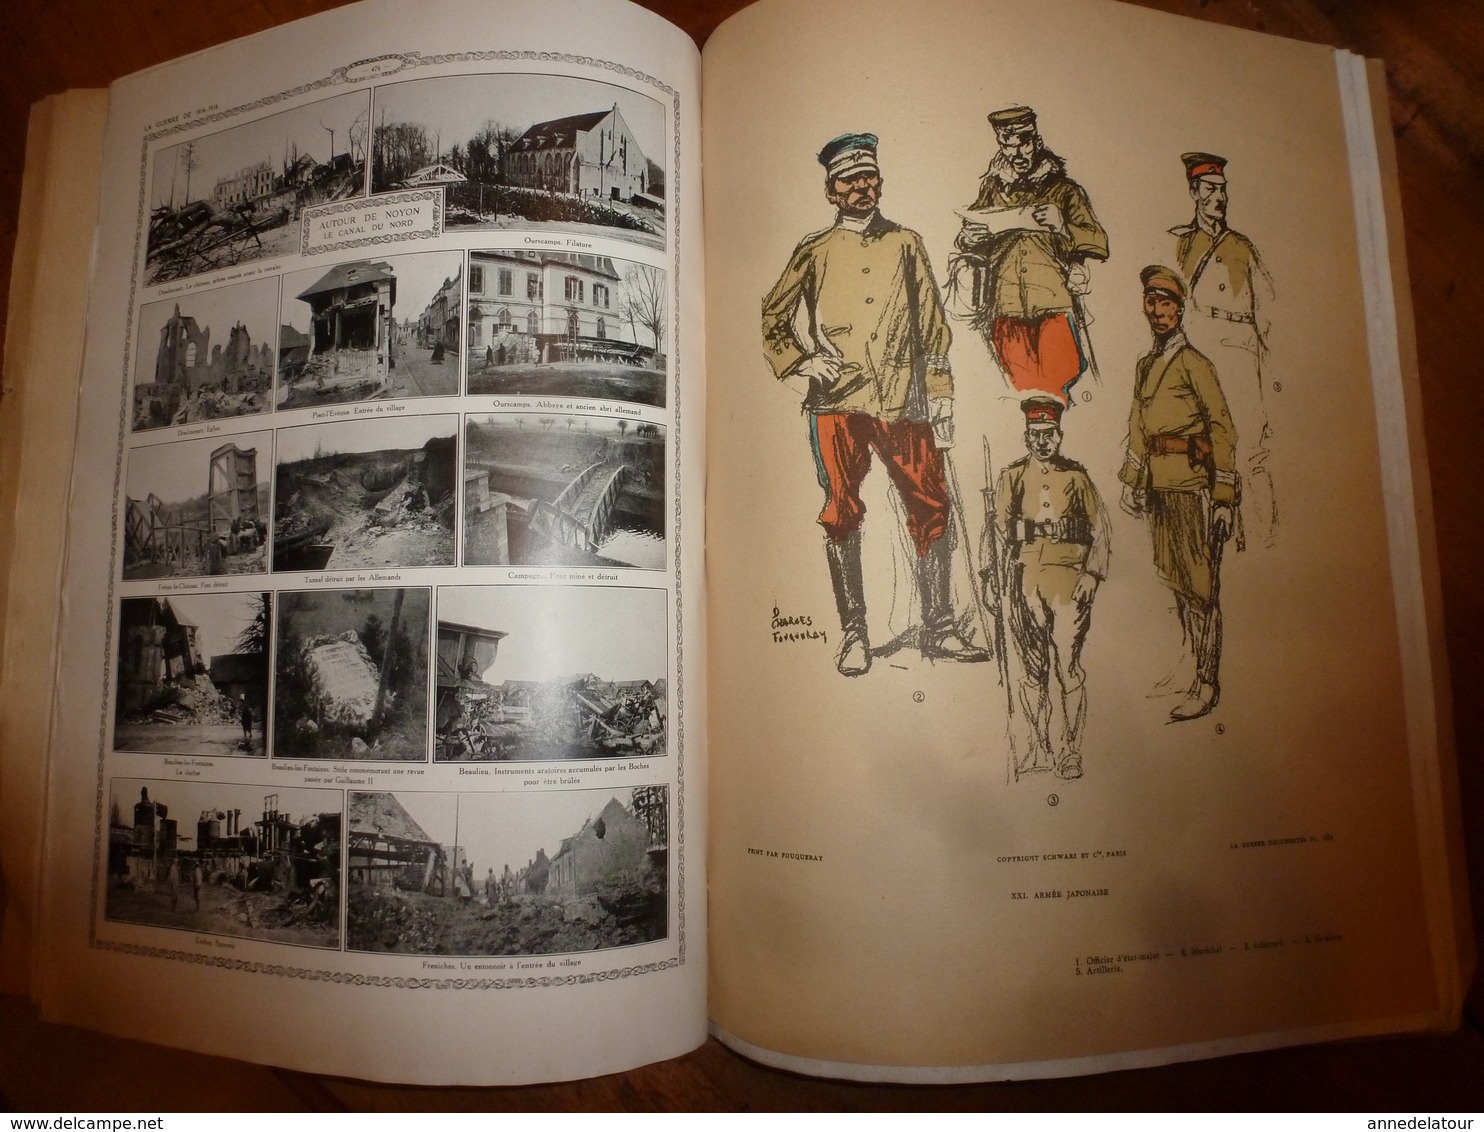 1914-1918  N° 30 LA GUERRE DOCUMENTEE,par Lieutenant-Colonel Le Marchand  (nombreuses photographies,dessins et gravures)